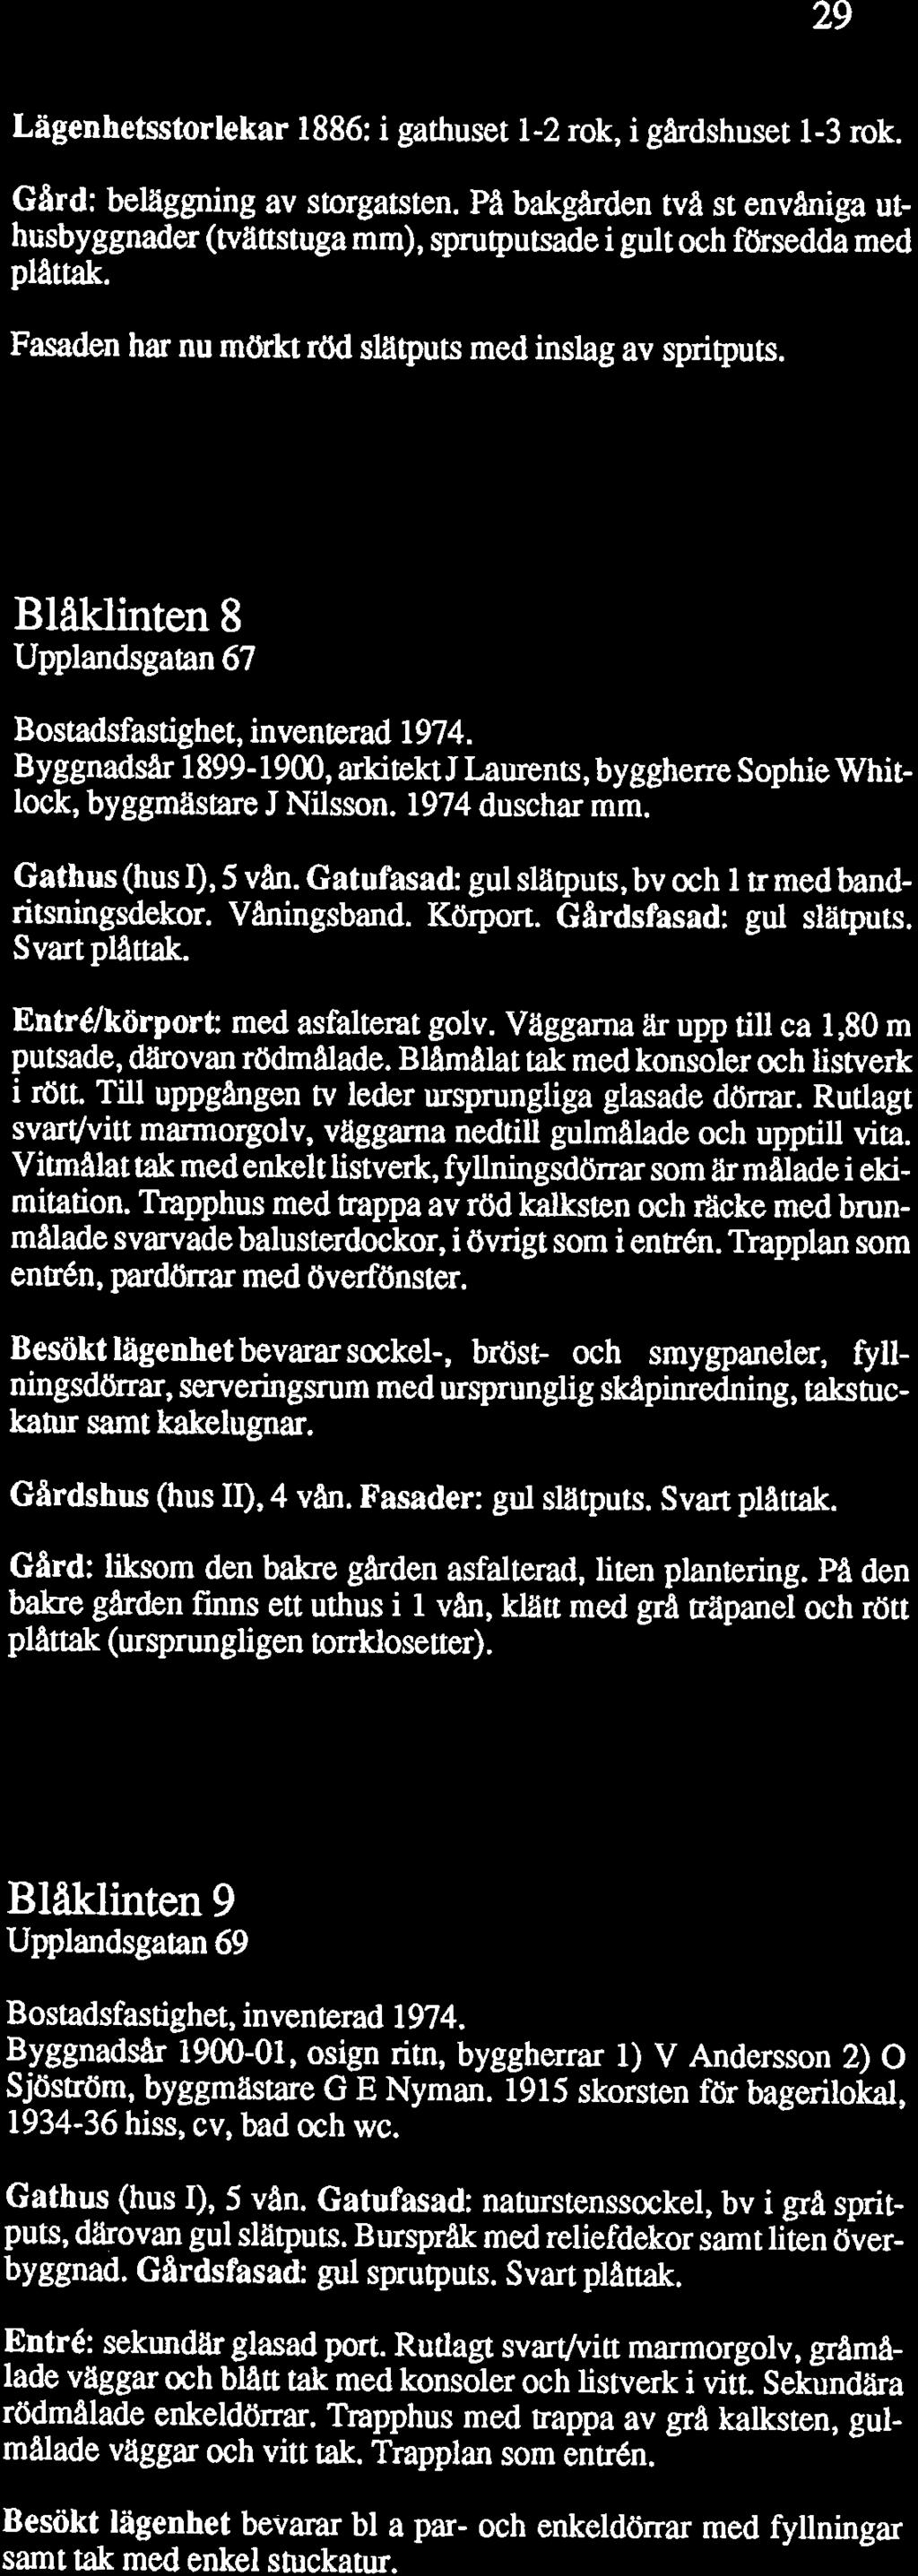 Lägenhetsstorlekar 1886: i gathuset 1-2 rok, i gårdshuset 1-3 rok. Gard: belaggning av storgatsten.